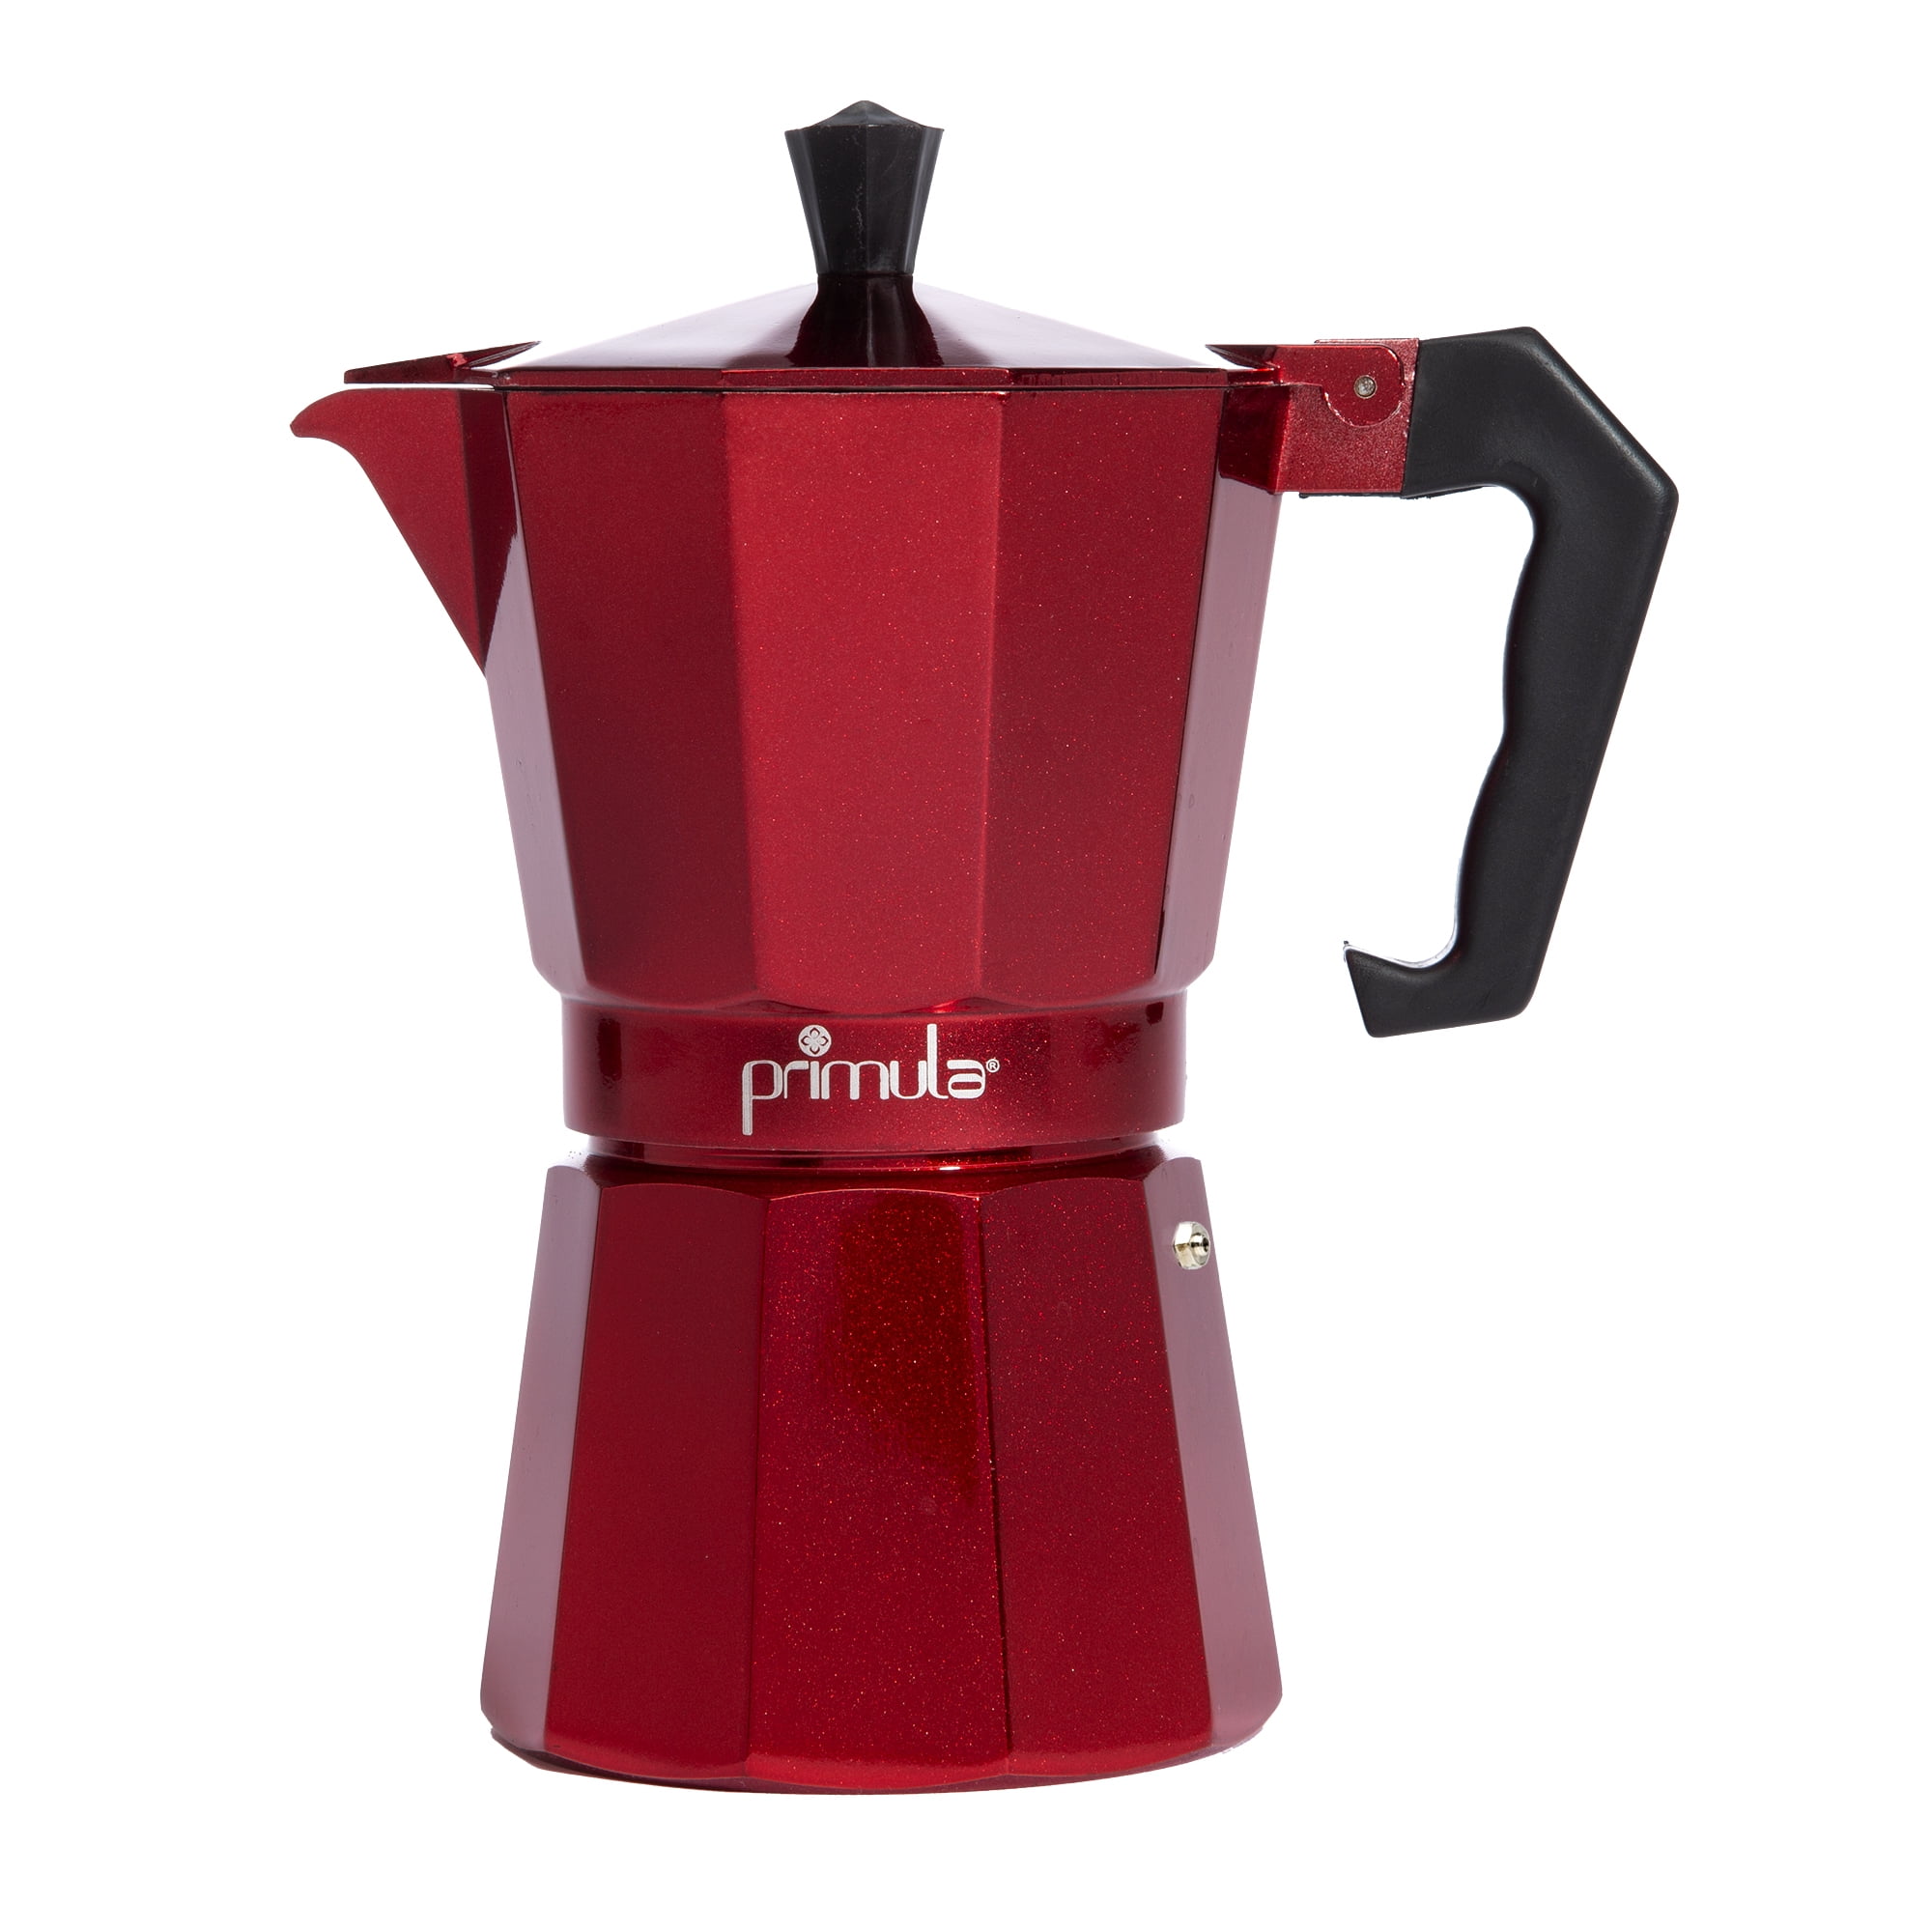 Primula Aluminum Espresso Maker for Stove Top, 6 Cup, Red 